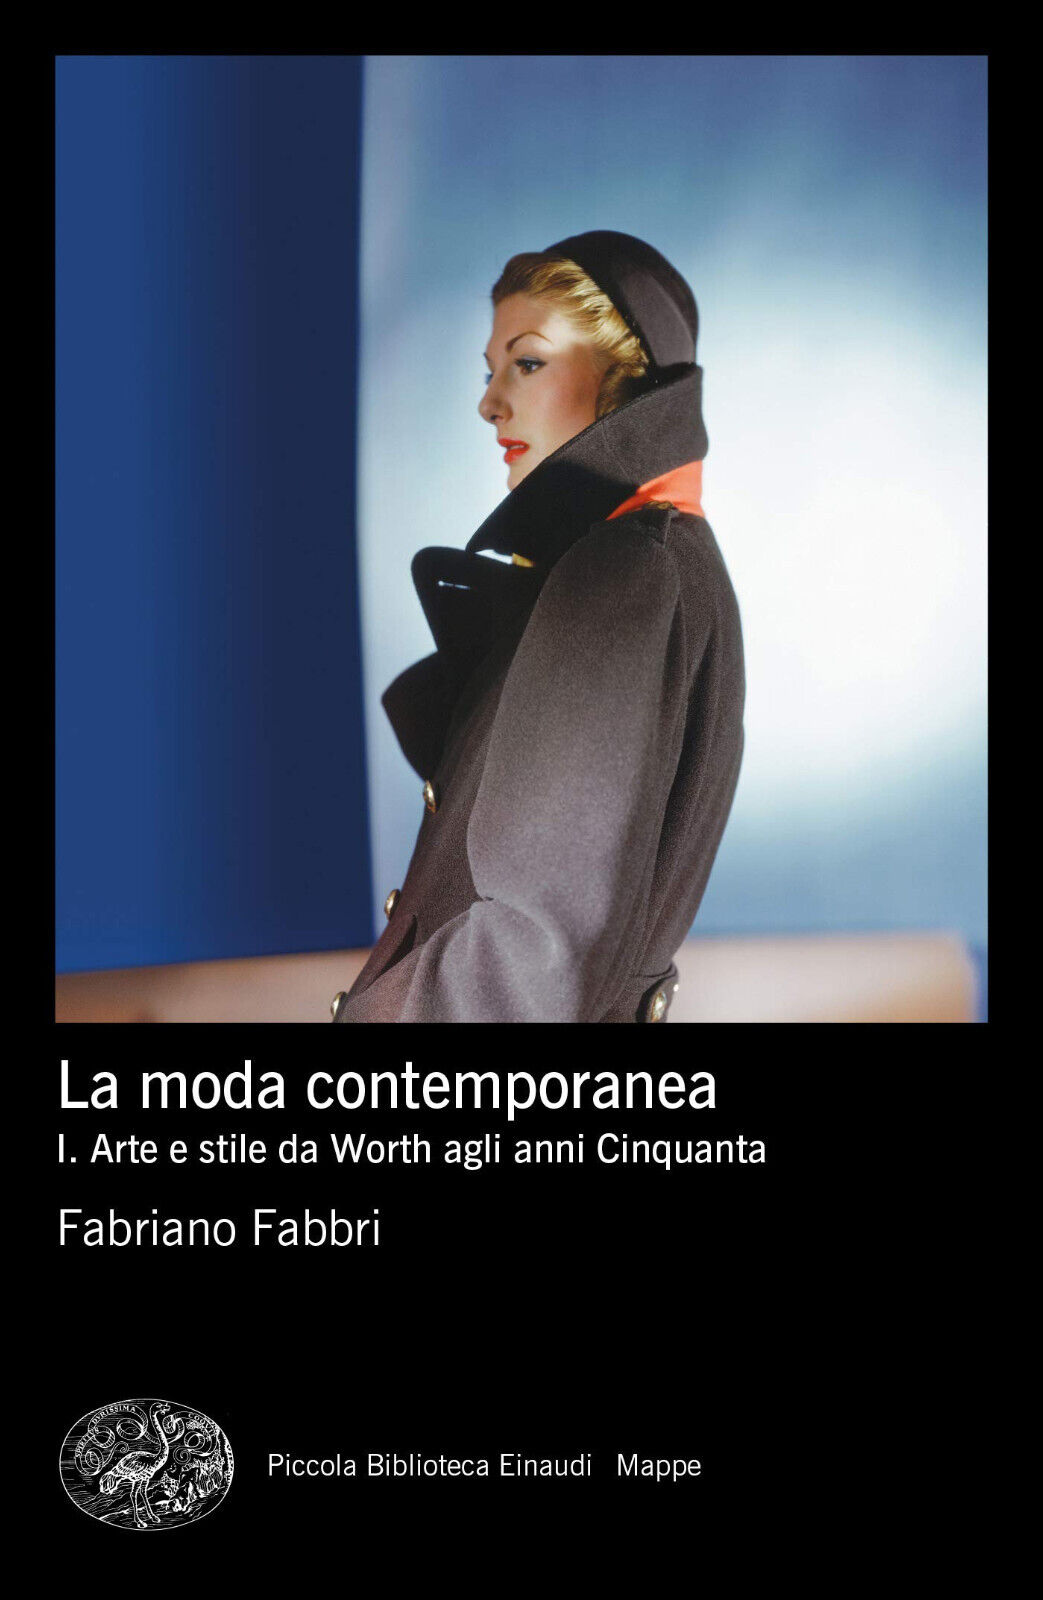 La moda contemporanea vol.1 - Fabriano Fabbri - Einaudi, 2019